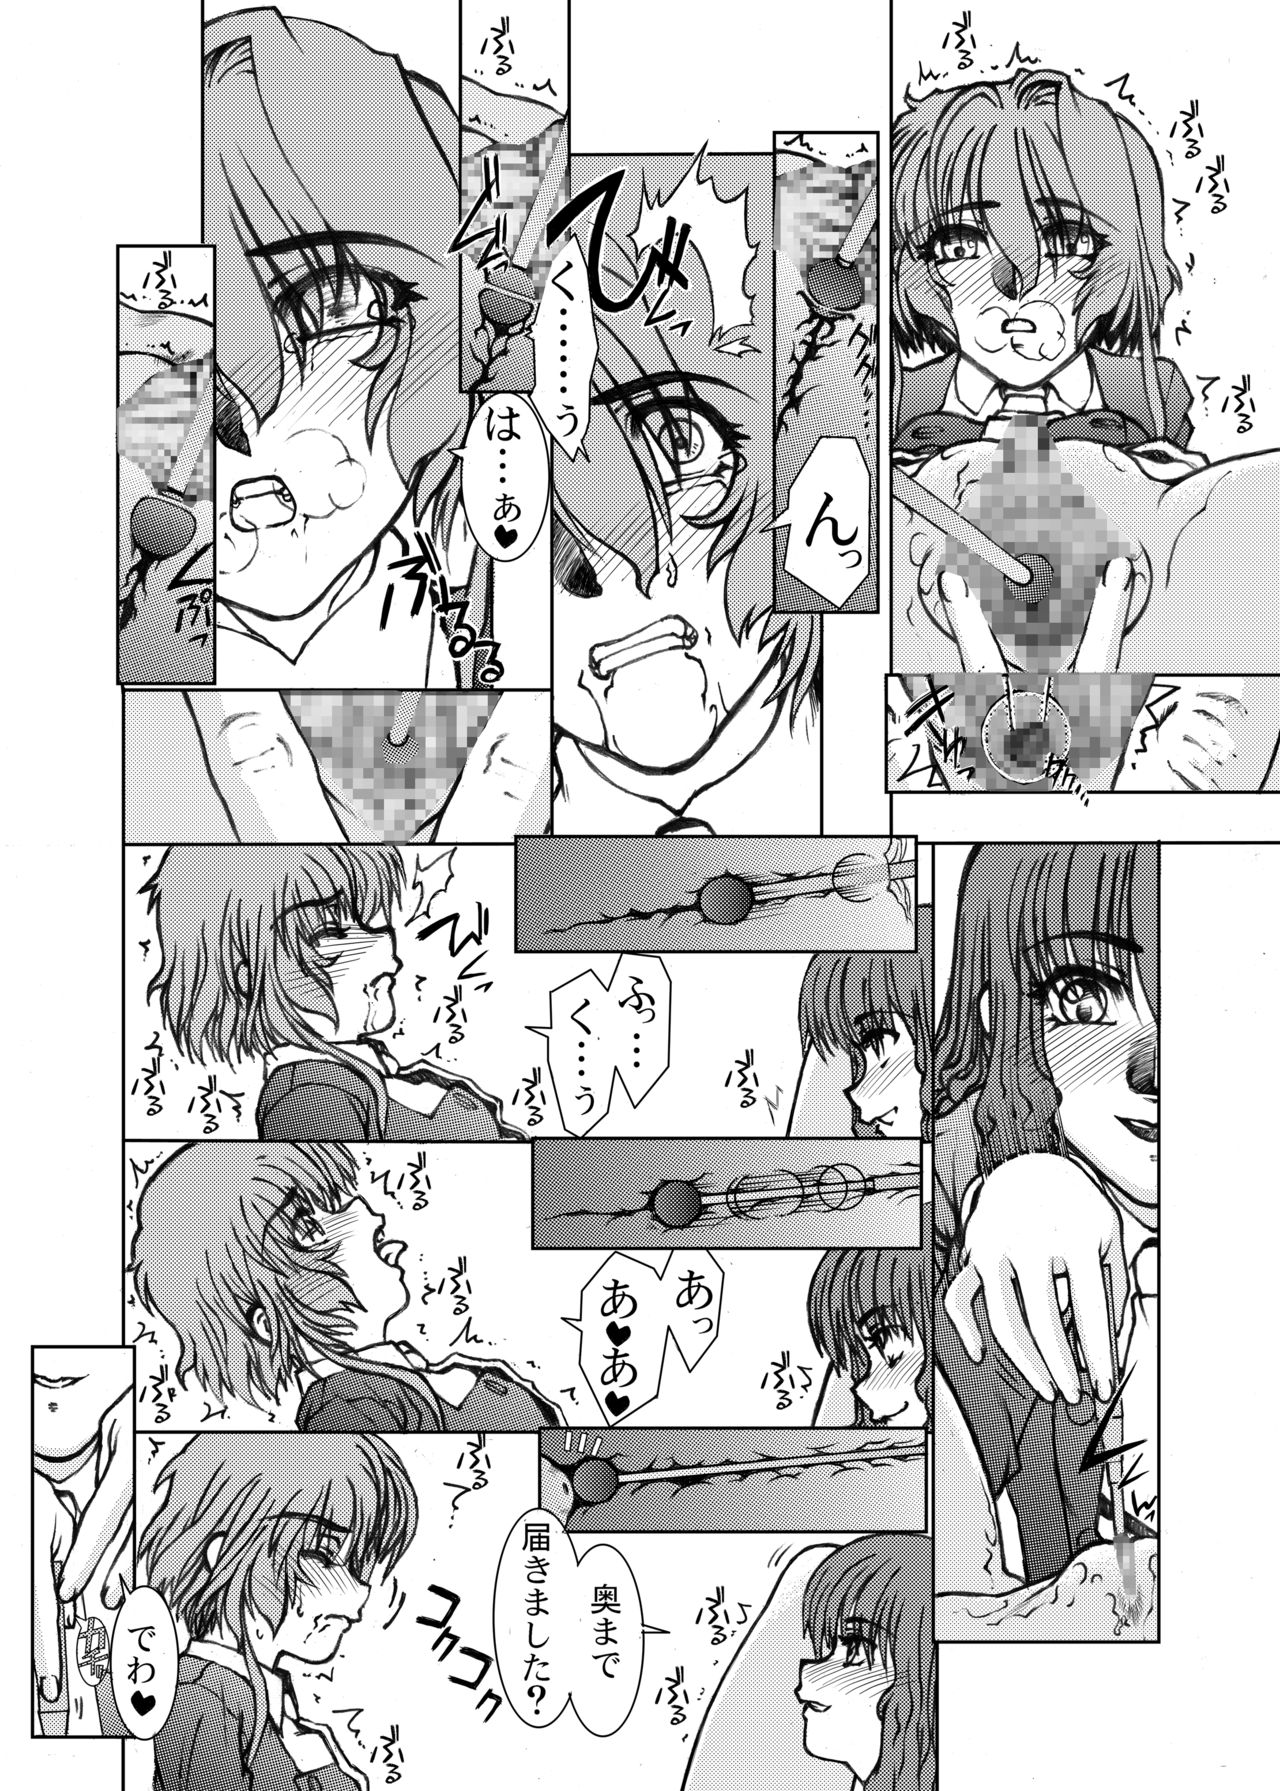 [Fresnel Lens (Hirano Kana)] Sakusen Kaishi Desu wa to Kanojo wa Itta Sono Ichi (Cardcaptor Sakura) [Digital] page 28 full